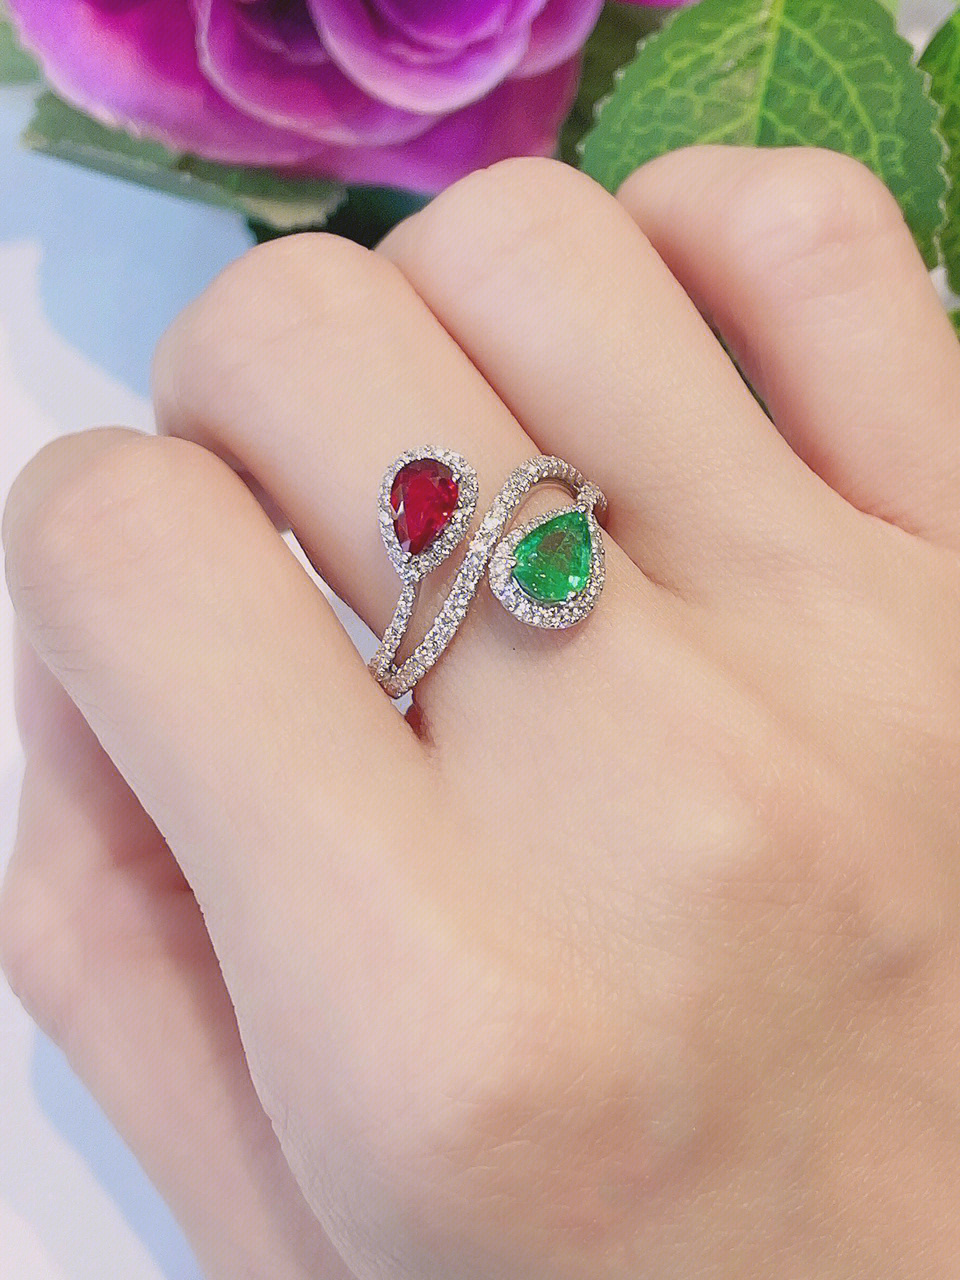 汇钻红绿宝石戒指78色彩鲜艳通透